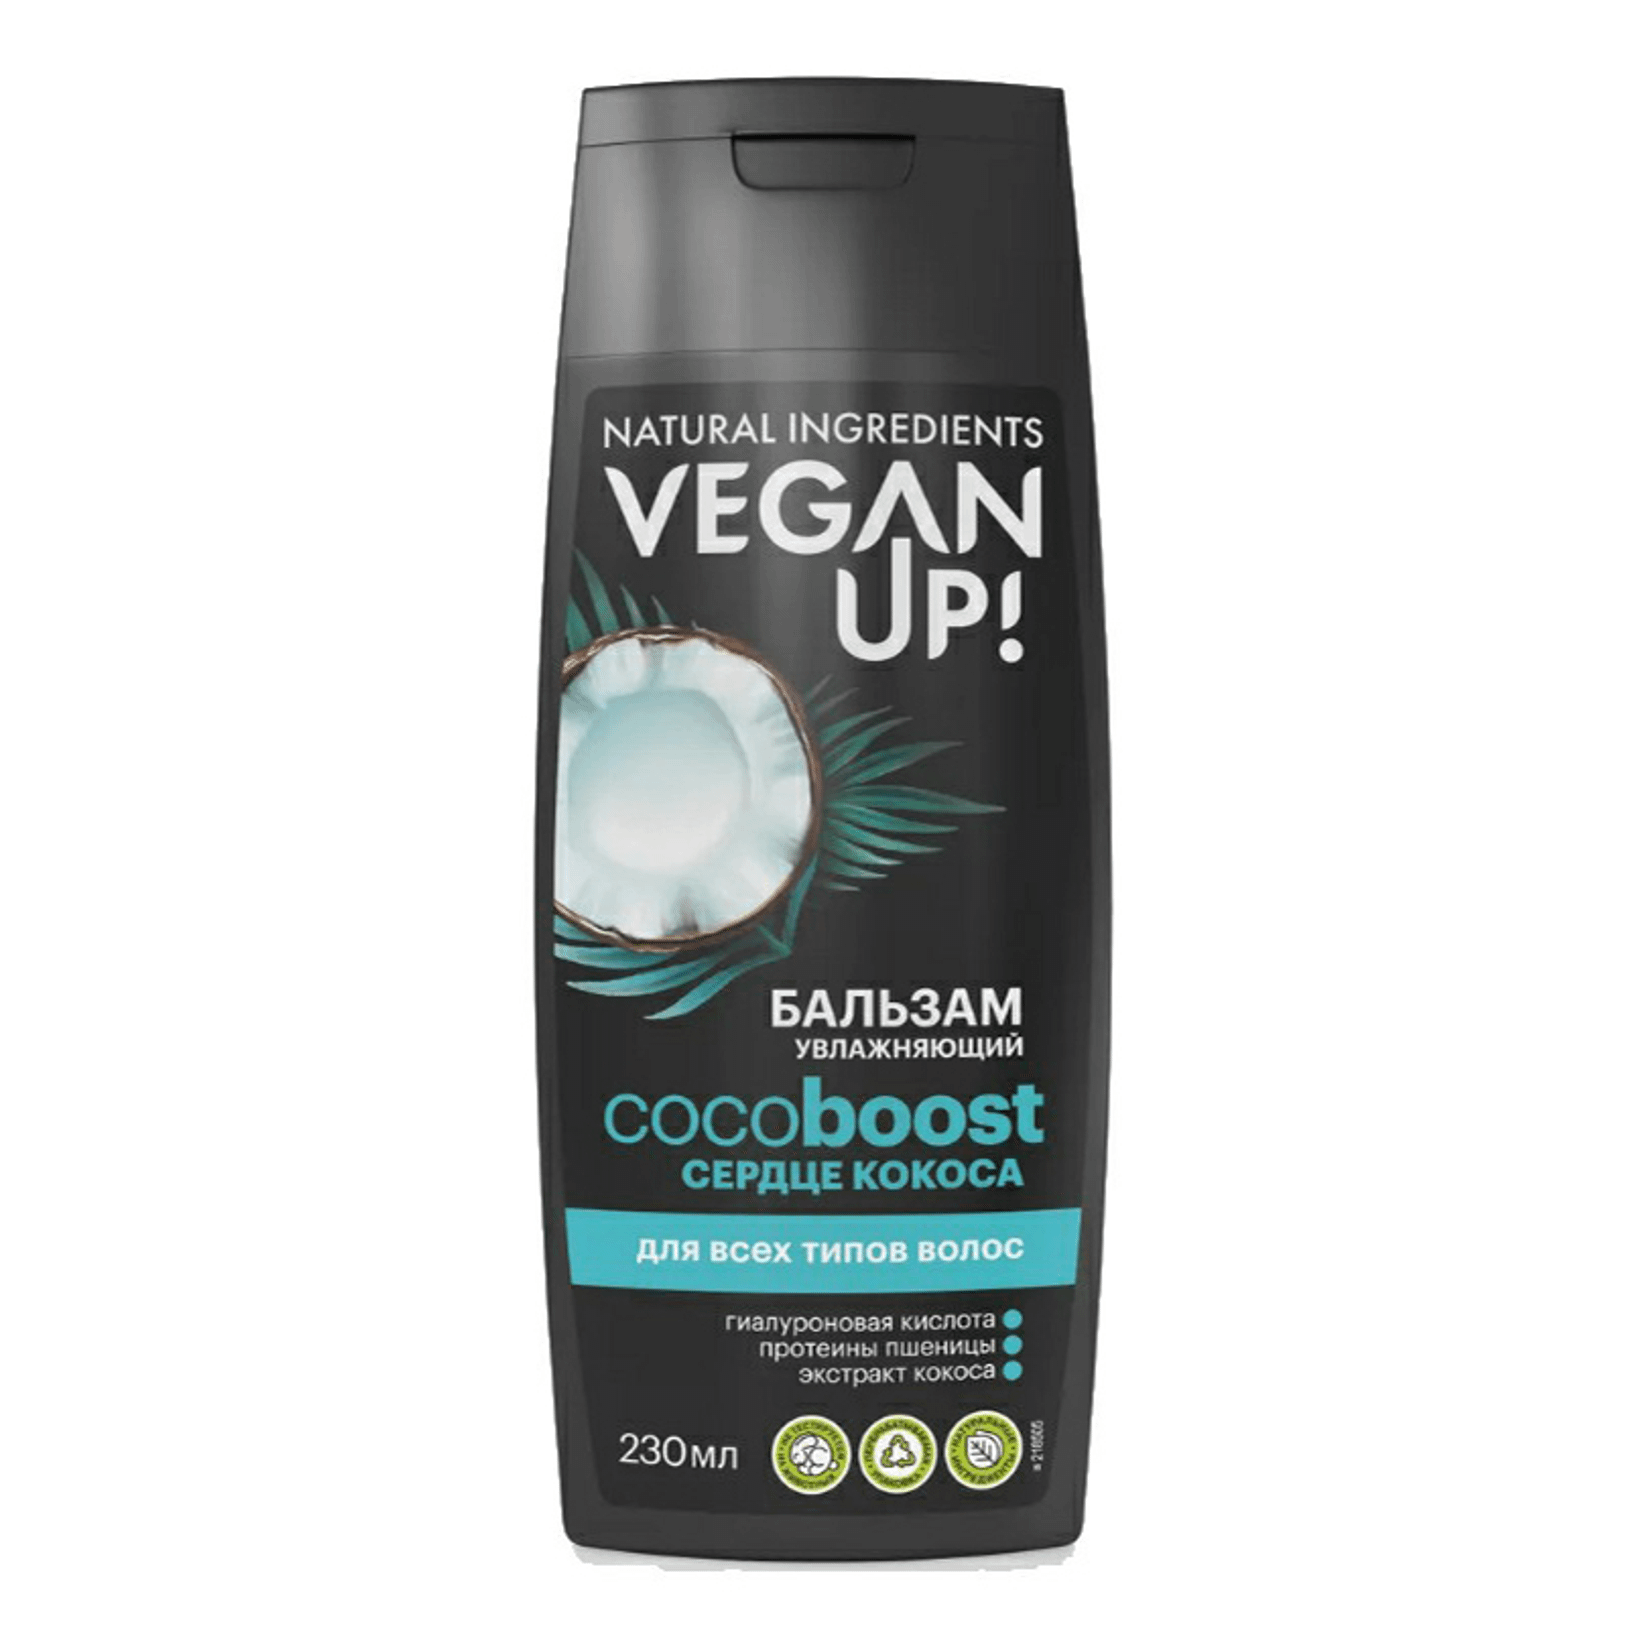 Бальзам-ополаскиватель VeganUp! Увлажняющий кокос 230 мл бальзам для волос увлажняющий сердце кокоса veganup cocoboost 200 мл